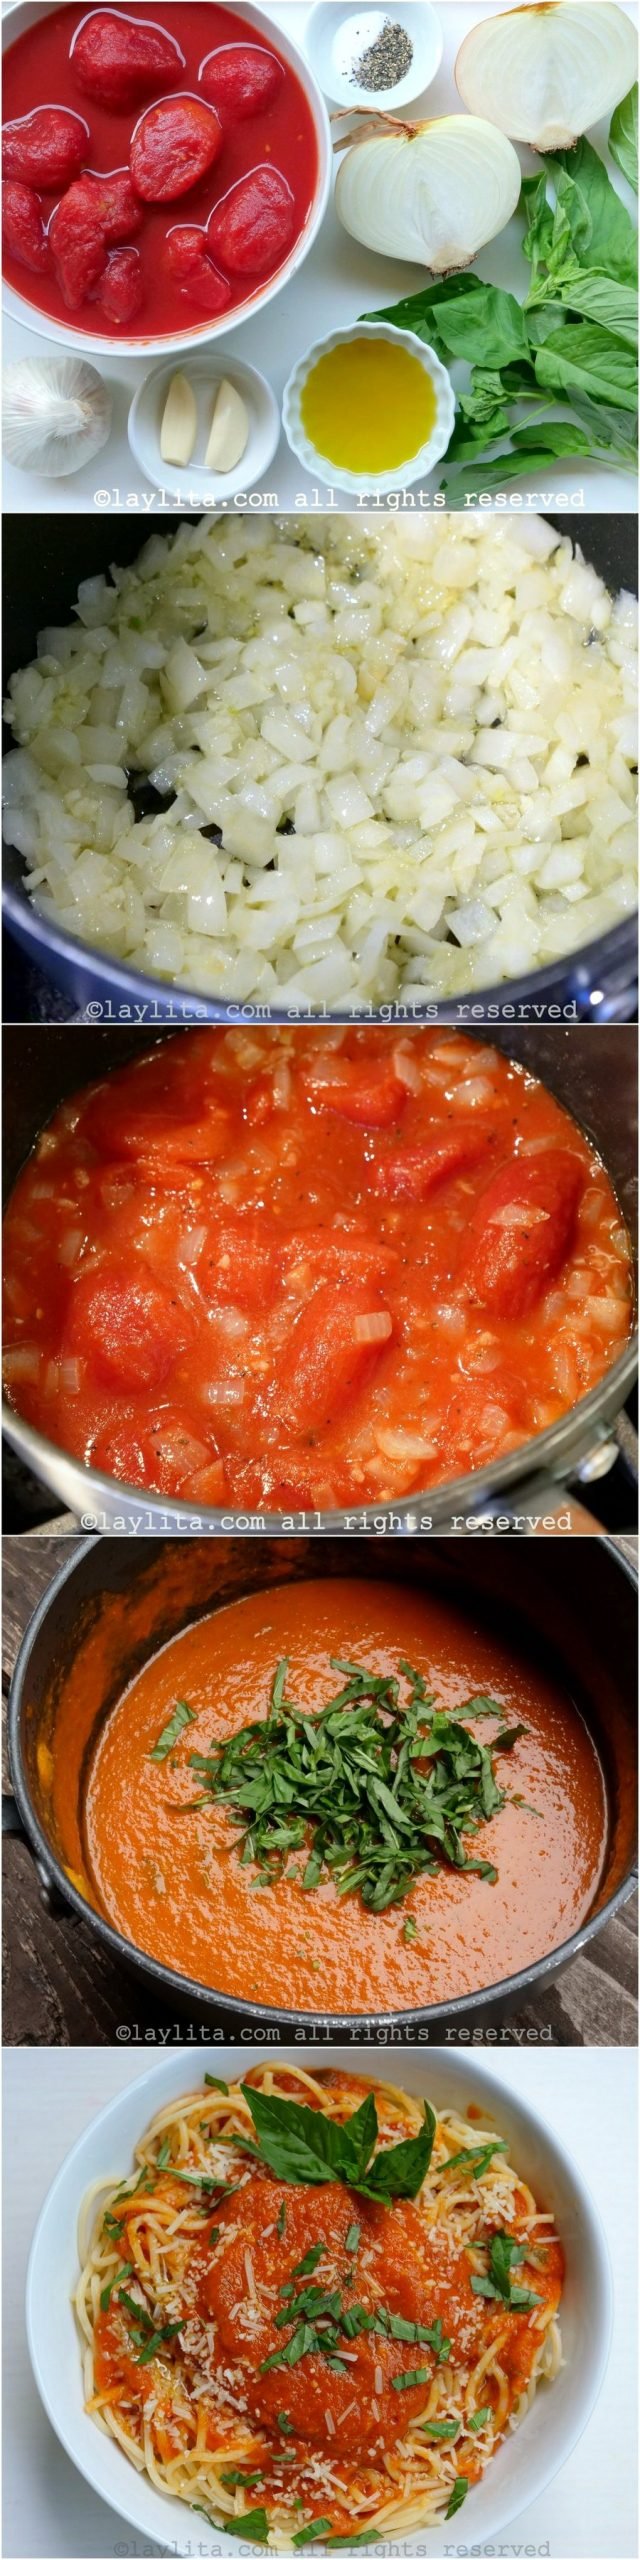 Preparación paso a paso de la salsa casera de tomate con albahaca